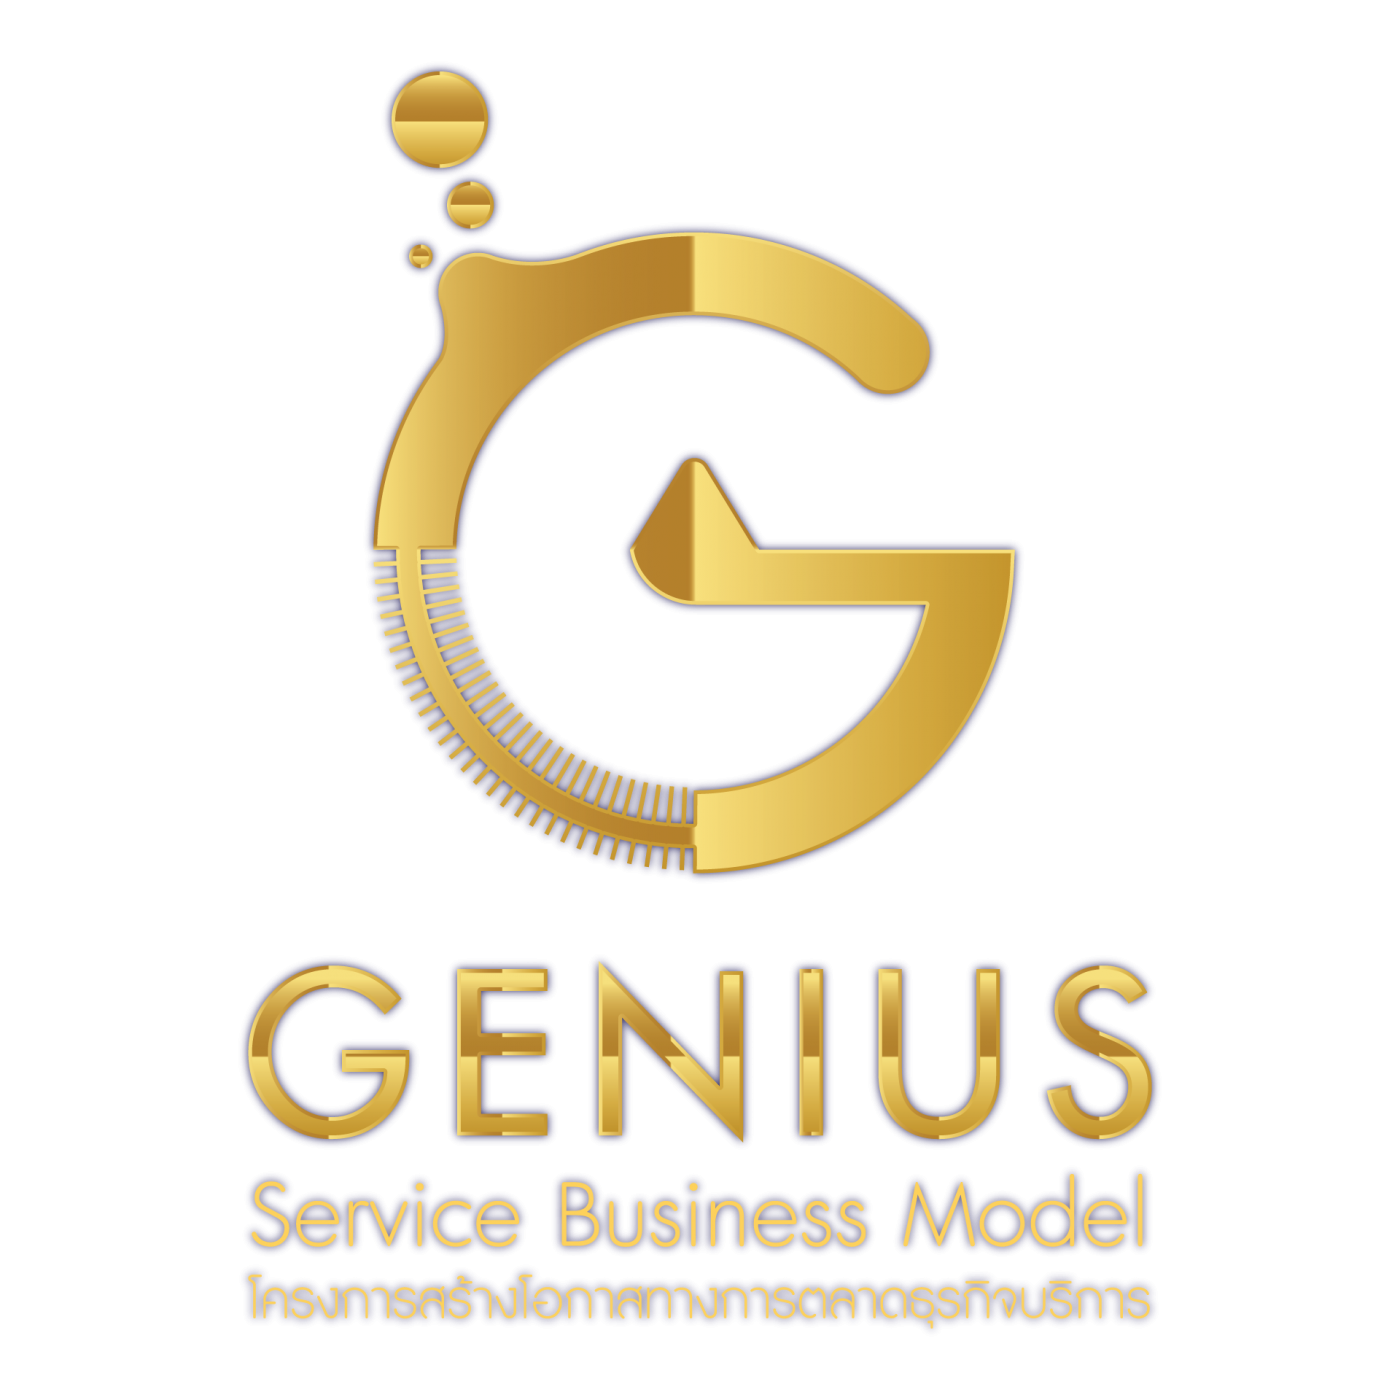 ปฏิทินข่าว กรมพัฒนาธุรกิจการค้า เปิดตัว 10 สุดยอดธุรกิจบริการต้นแบบแห่งปี  ในงาน Genius Service Business Model 2020 Service Business